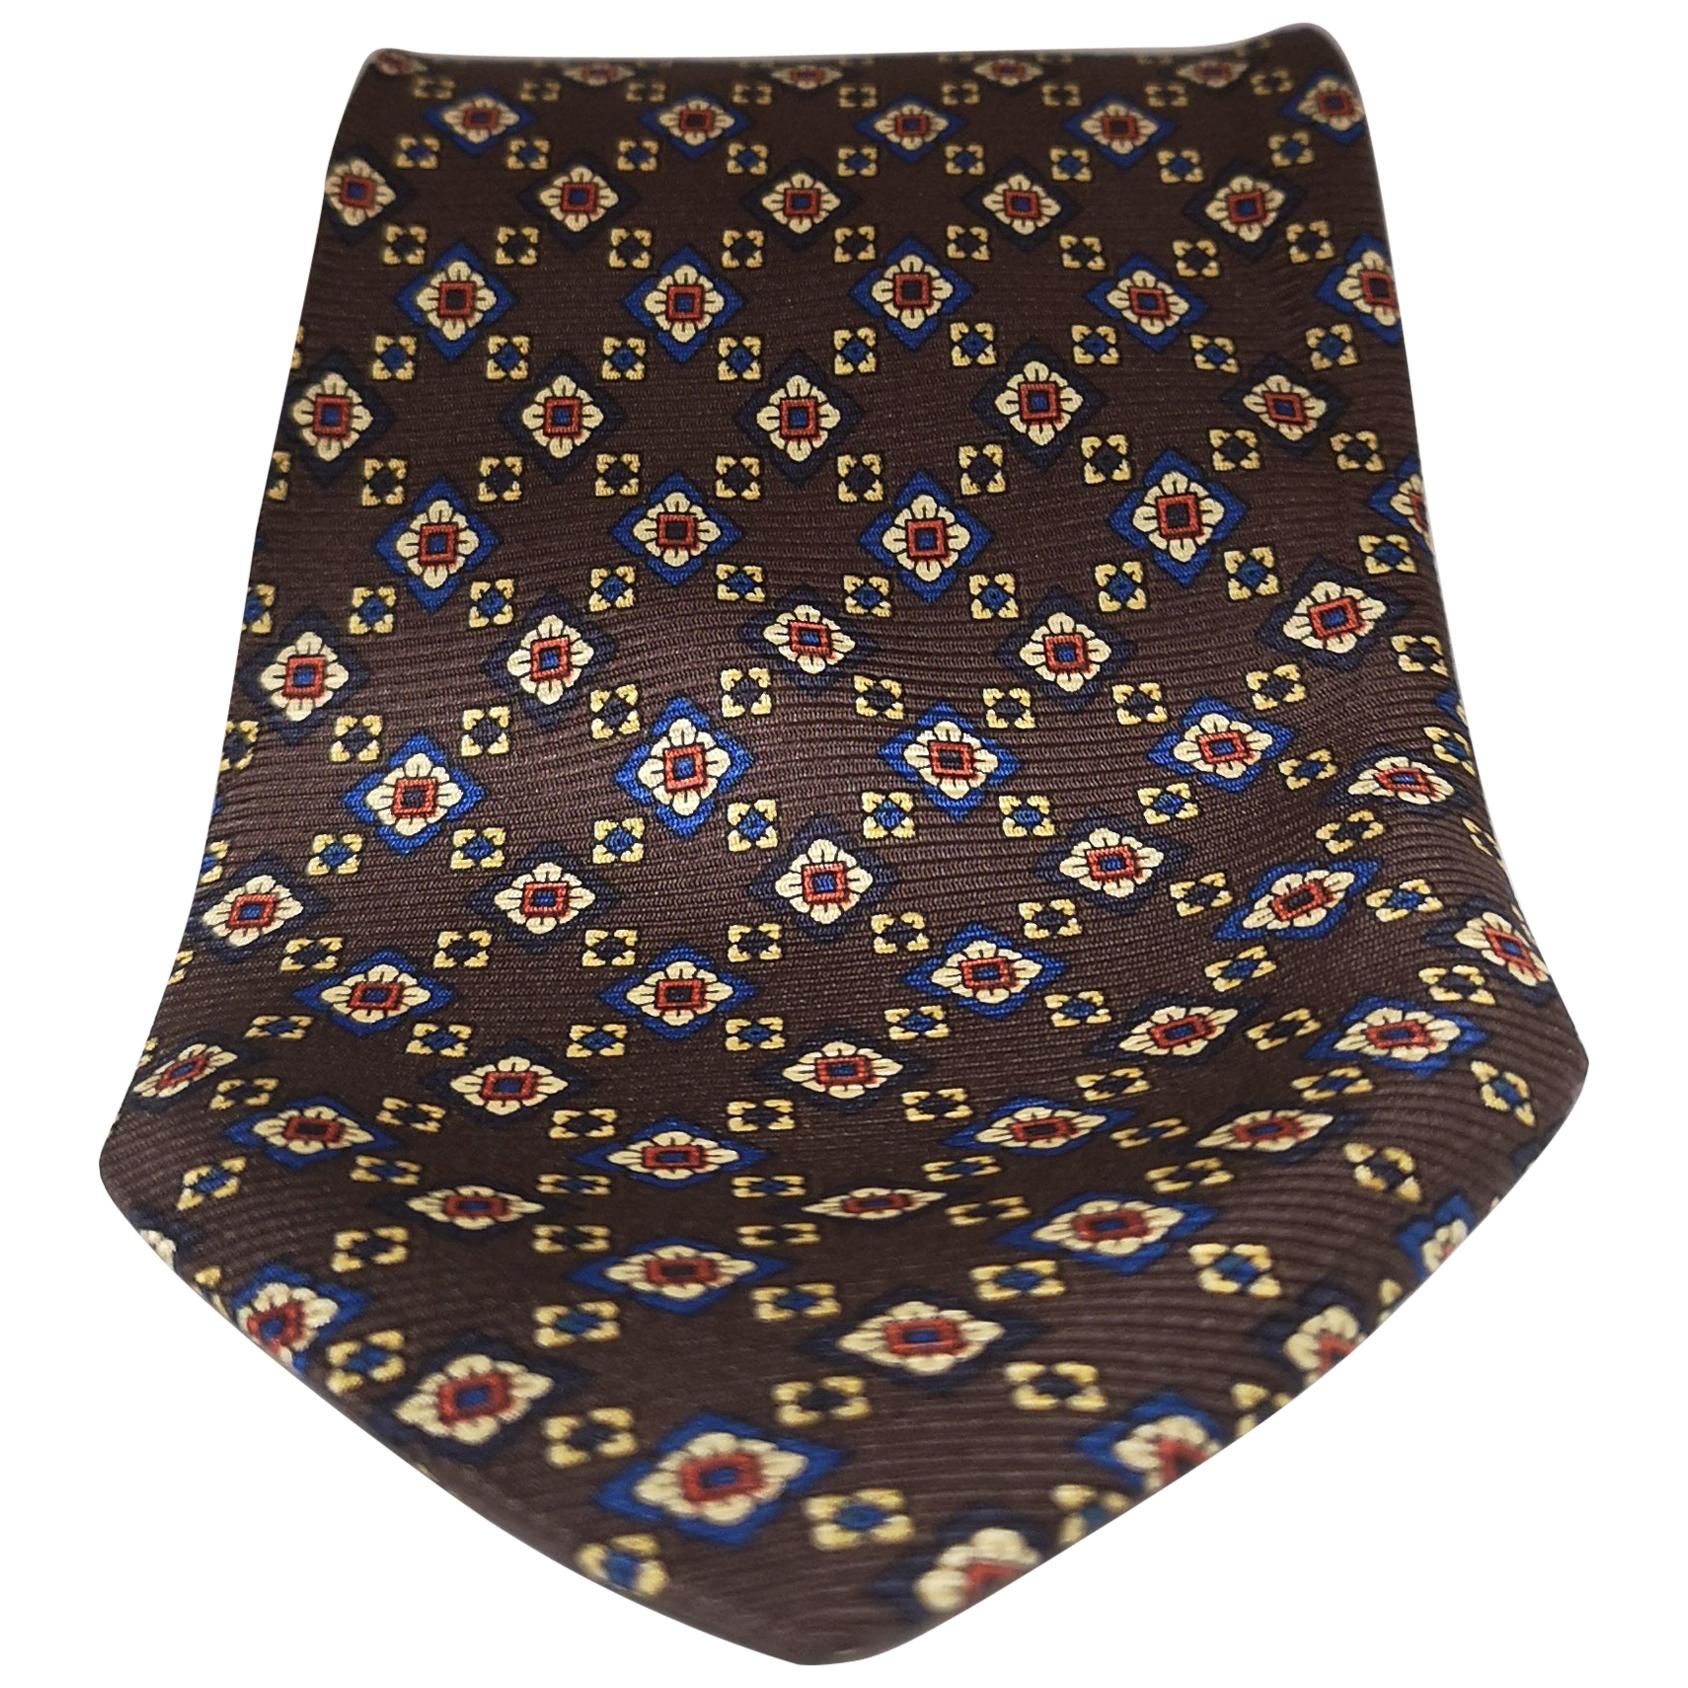 Vintage multicoloured tie